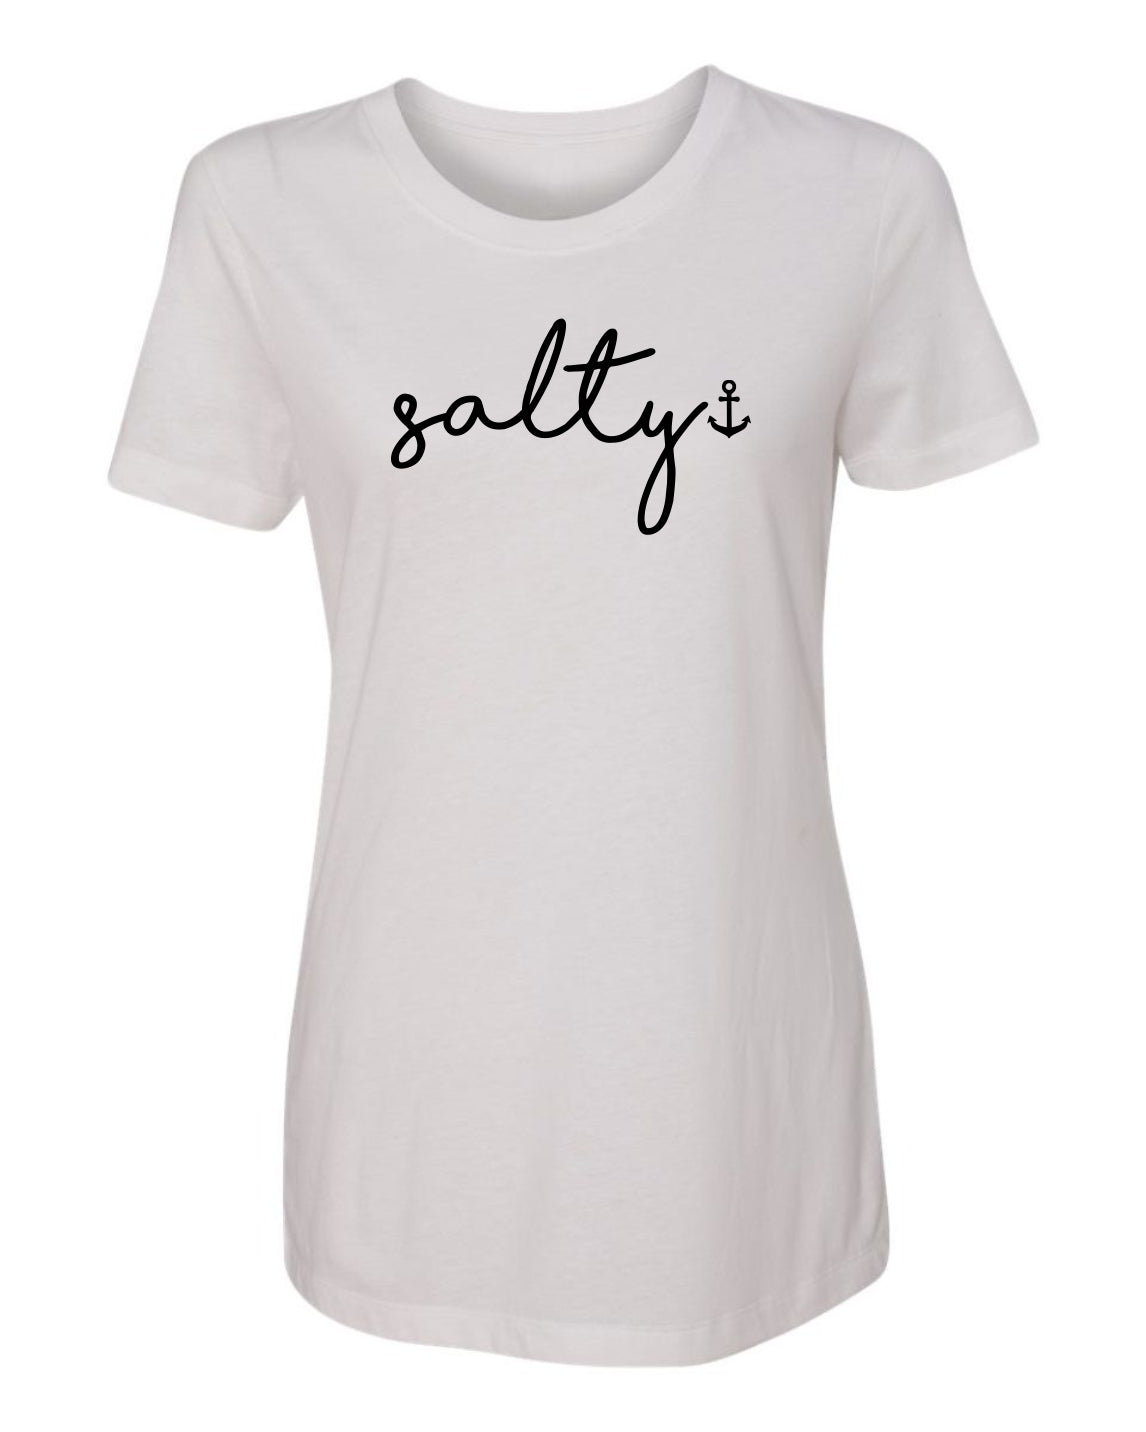 "Salty" T-Shirt